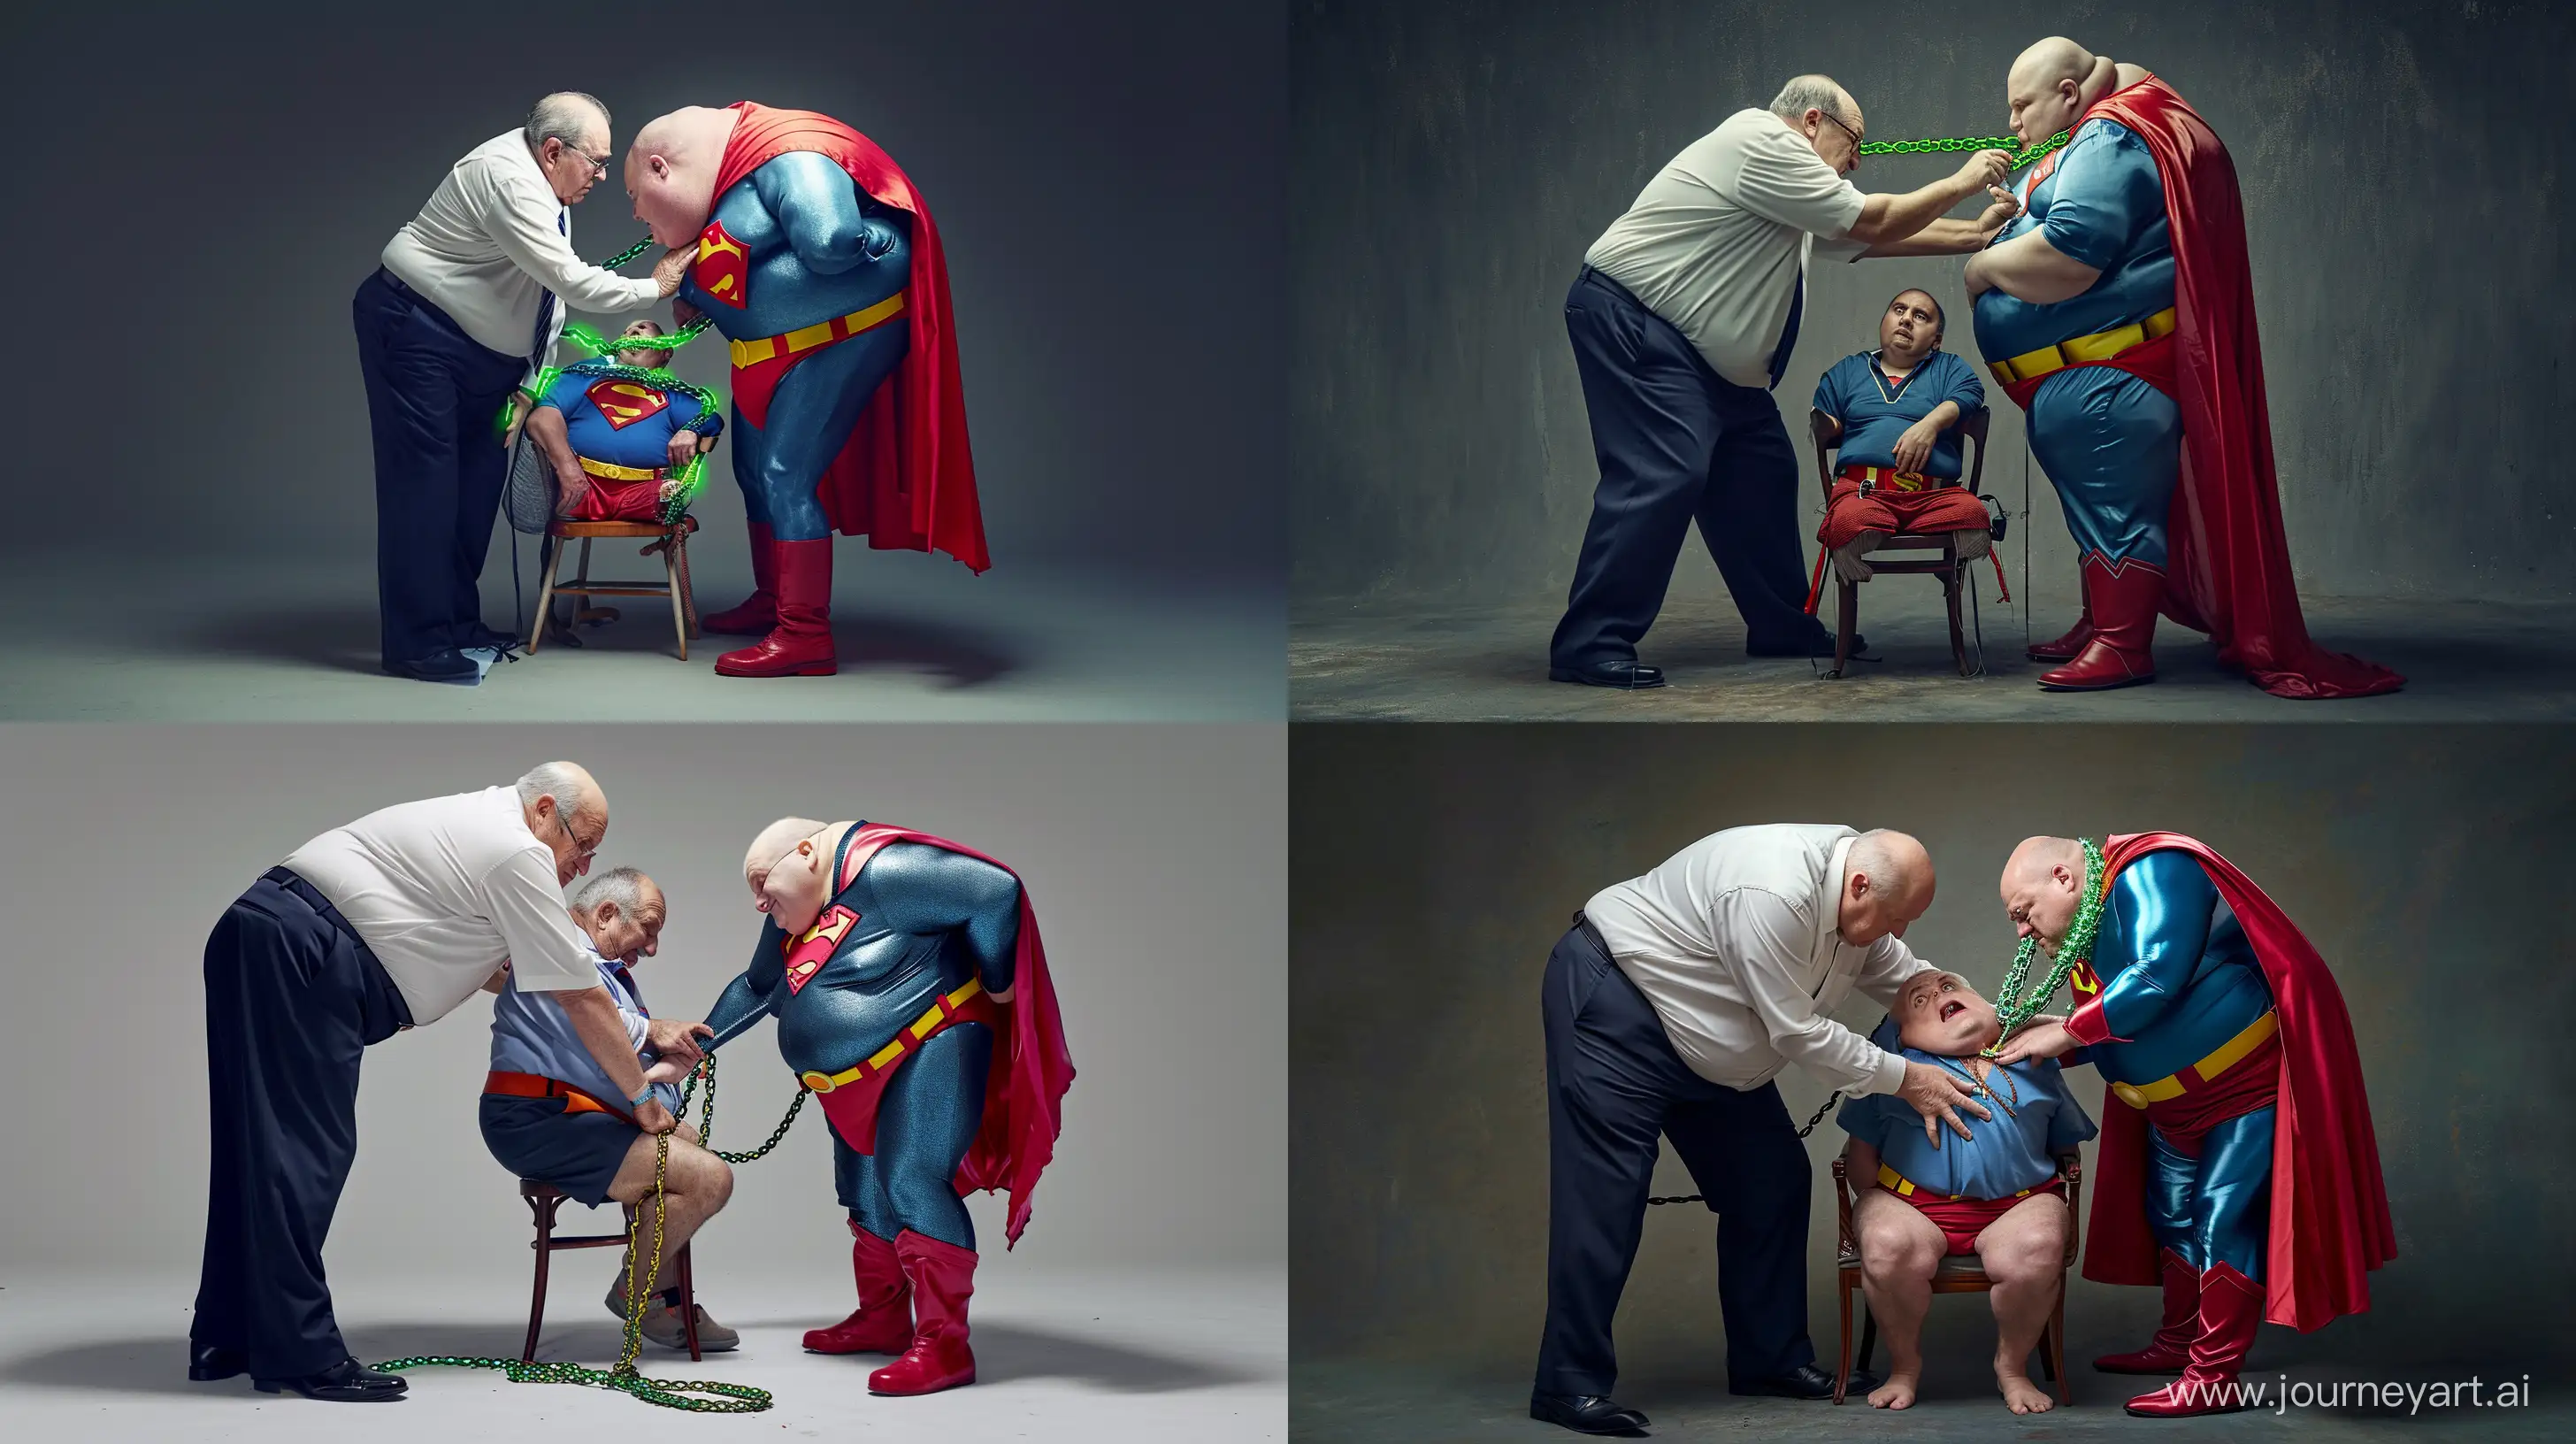 Elderly-Superman-Confrontation-Unusual-Showdown-in-Business-Attire